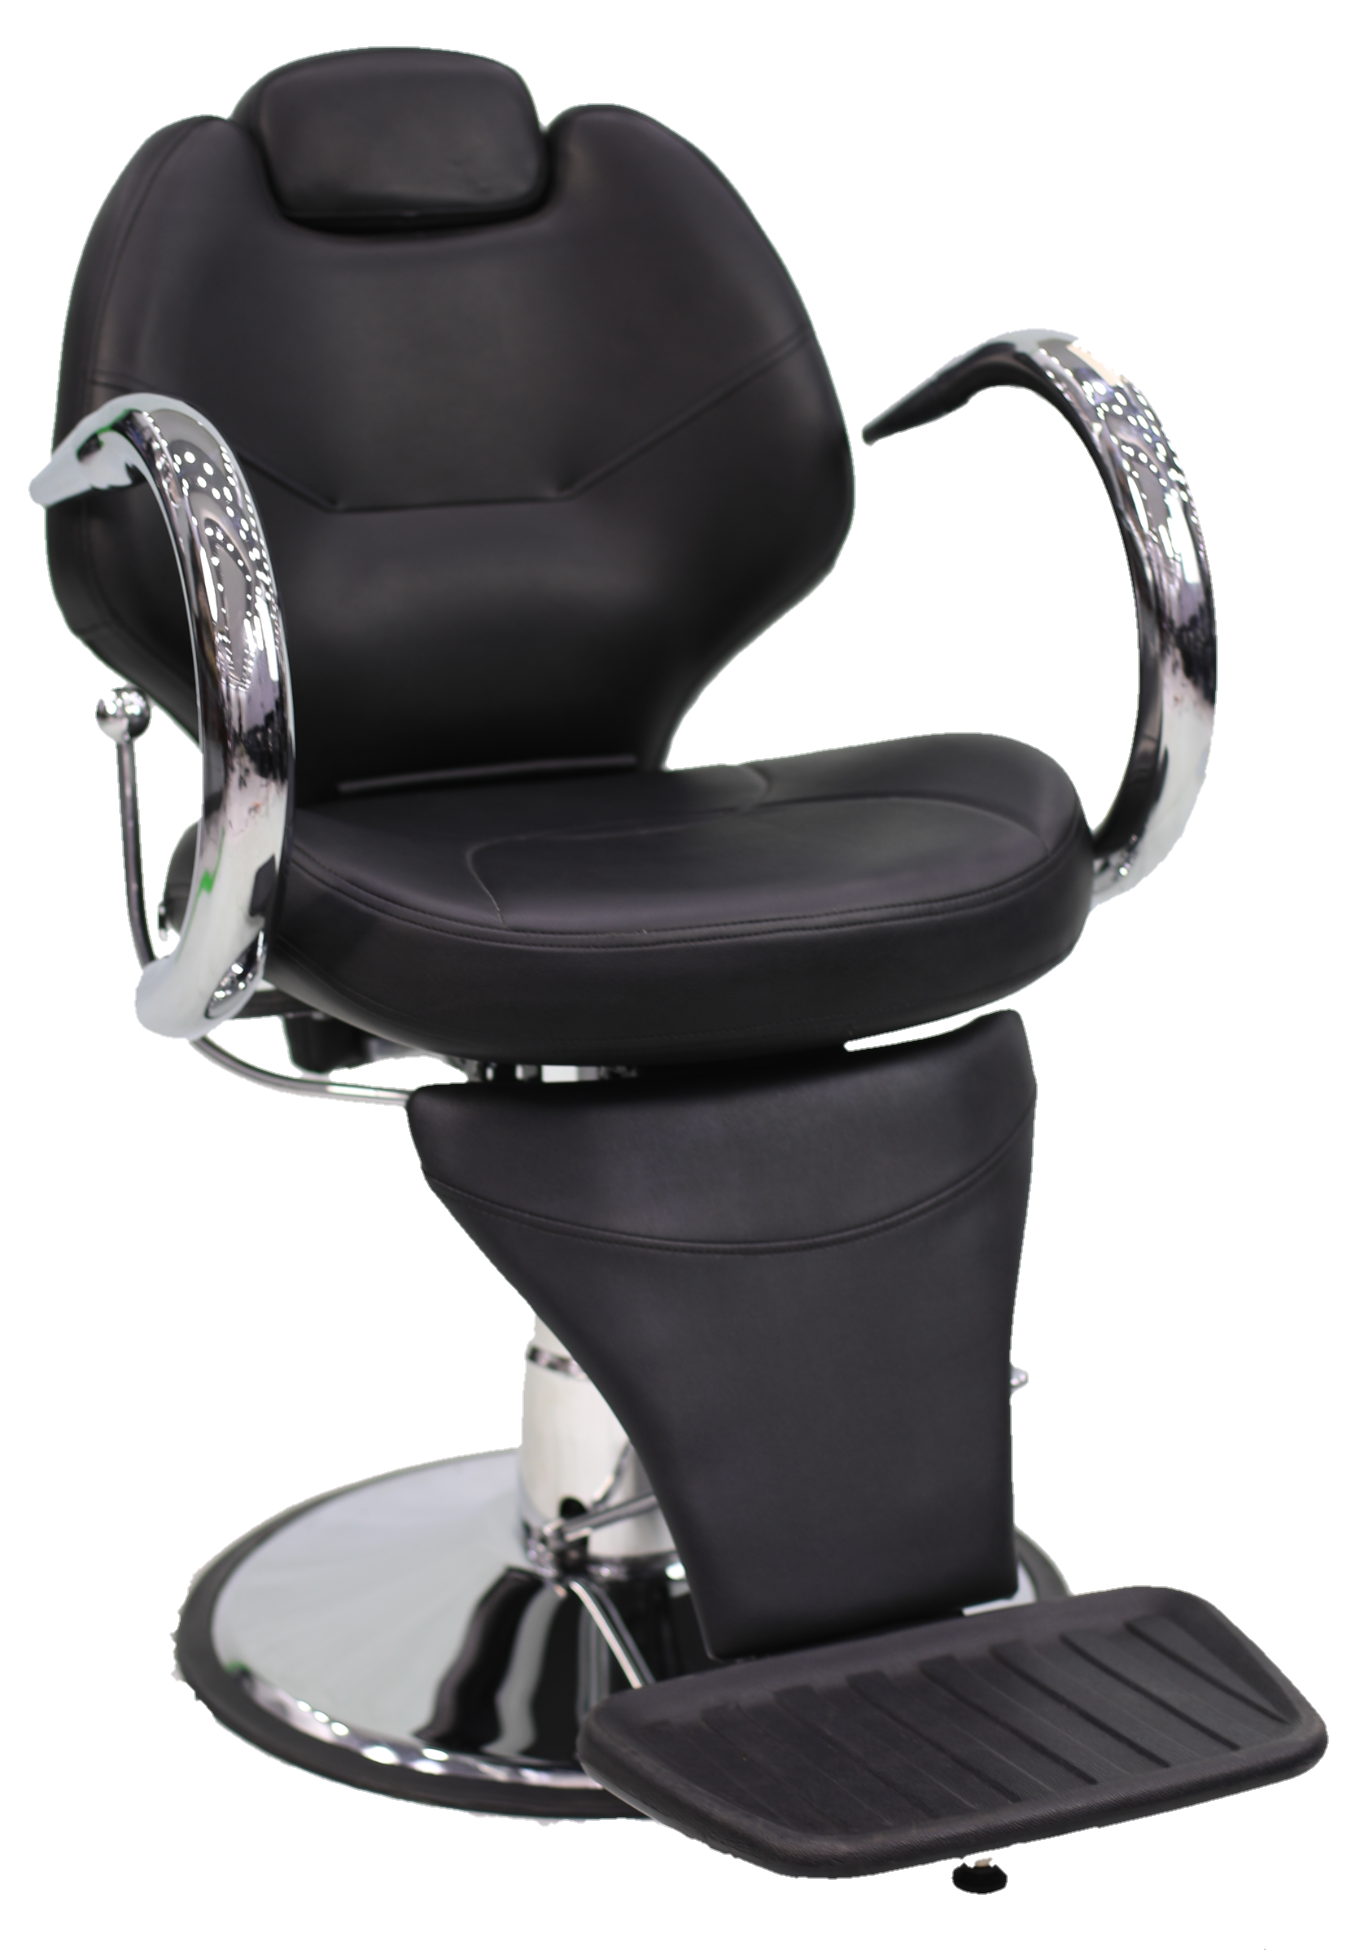 Portable All Purpose Chair Recliner Chair Salon BX-2668B